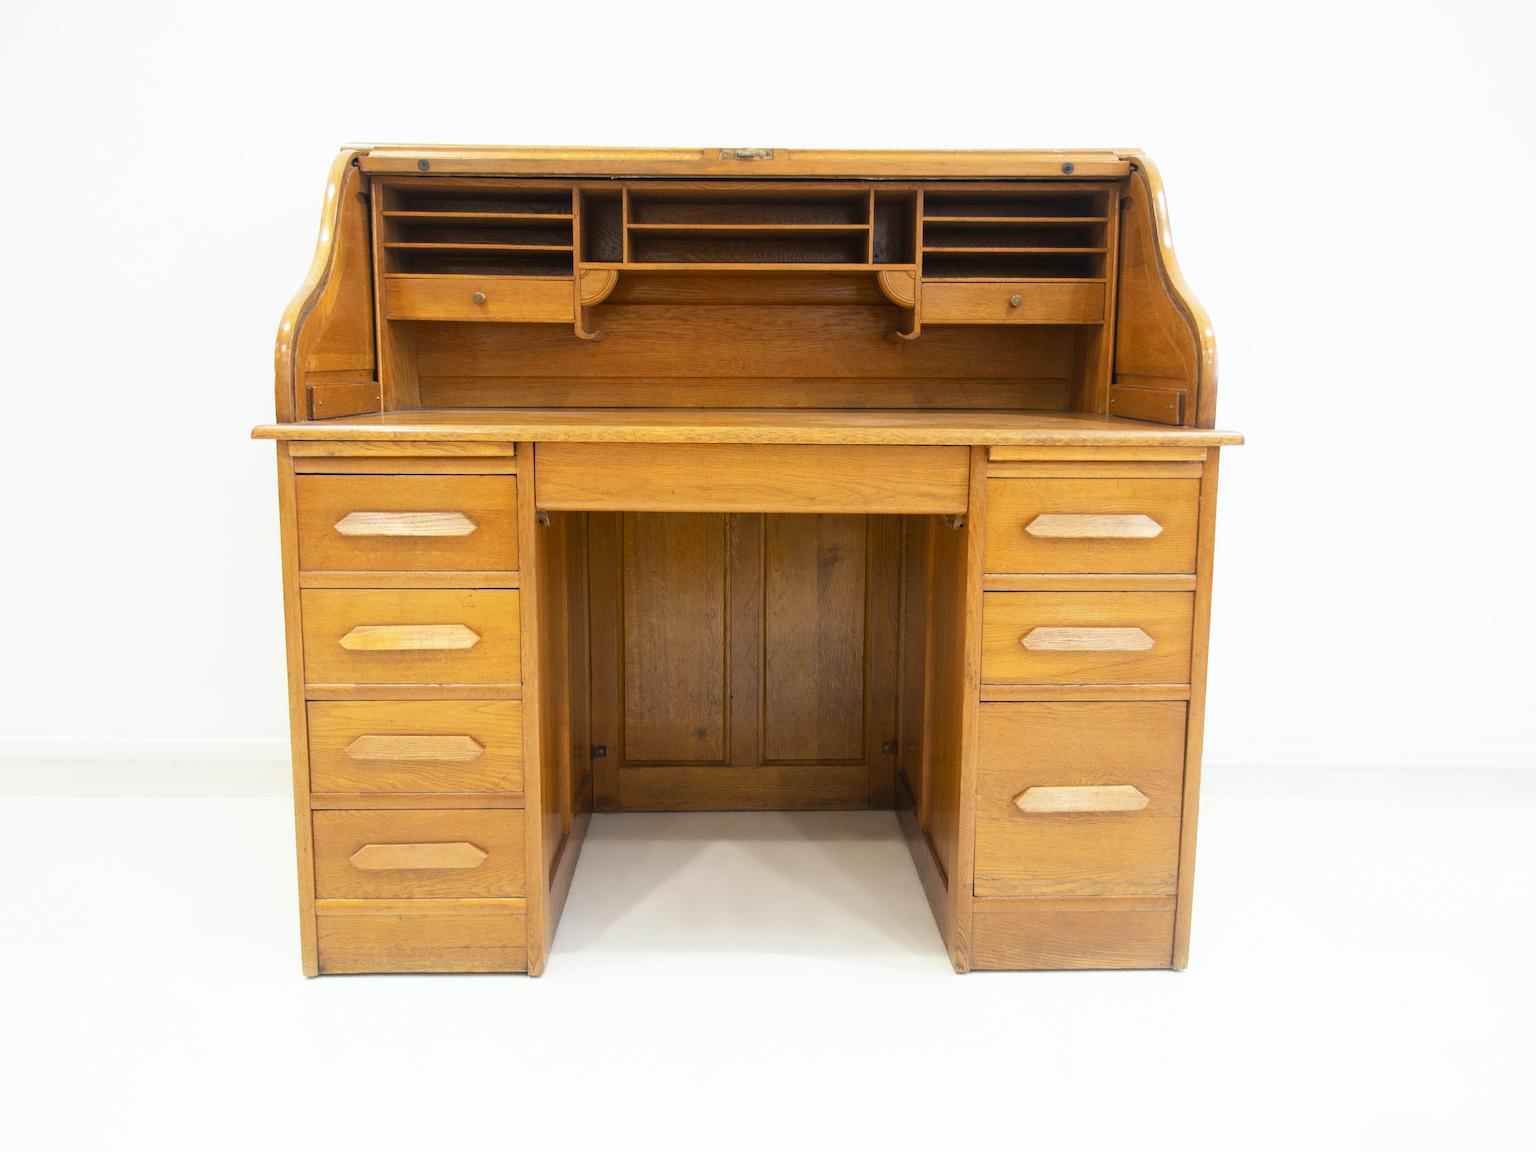 Sekretär/Schreibtisch aus Eiche, ca. 1900. Ausgestattet mit einer aufrollbaren Klappe mit darunter liegender Schreibtafel, einem Einlegeboden im Inneren und zwei Schubladen. Unter dem Schreibtisch befinden sich zwei Auszugstafeln und sieben